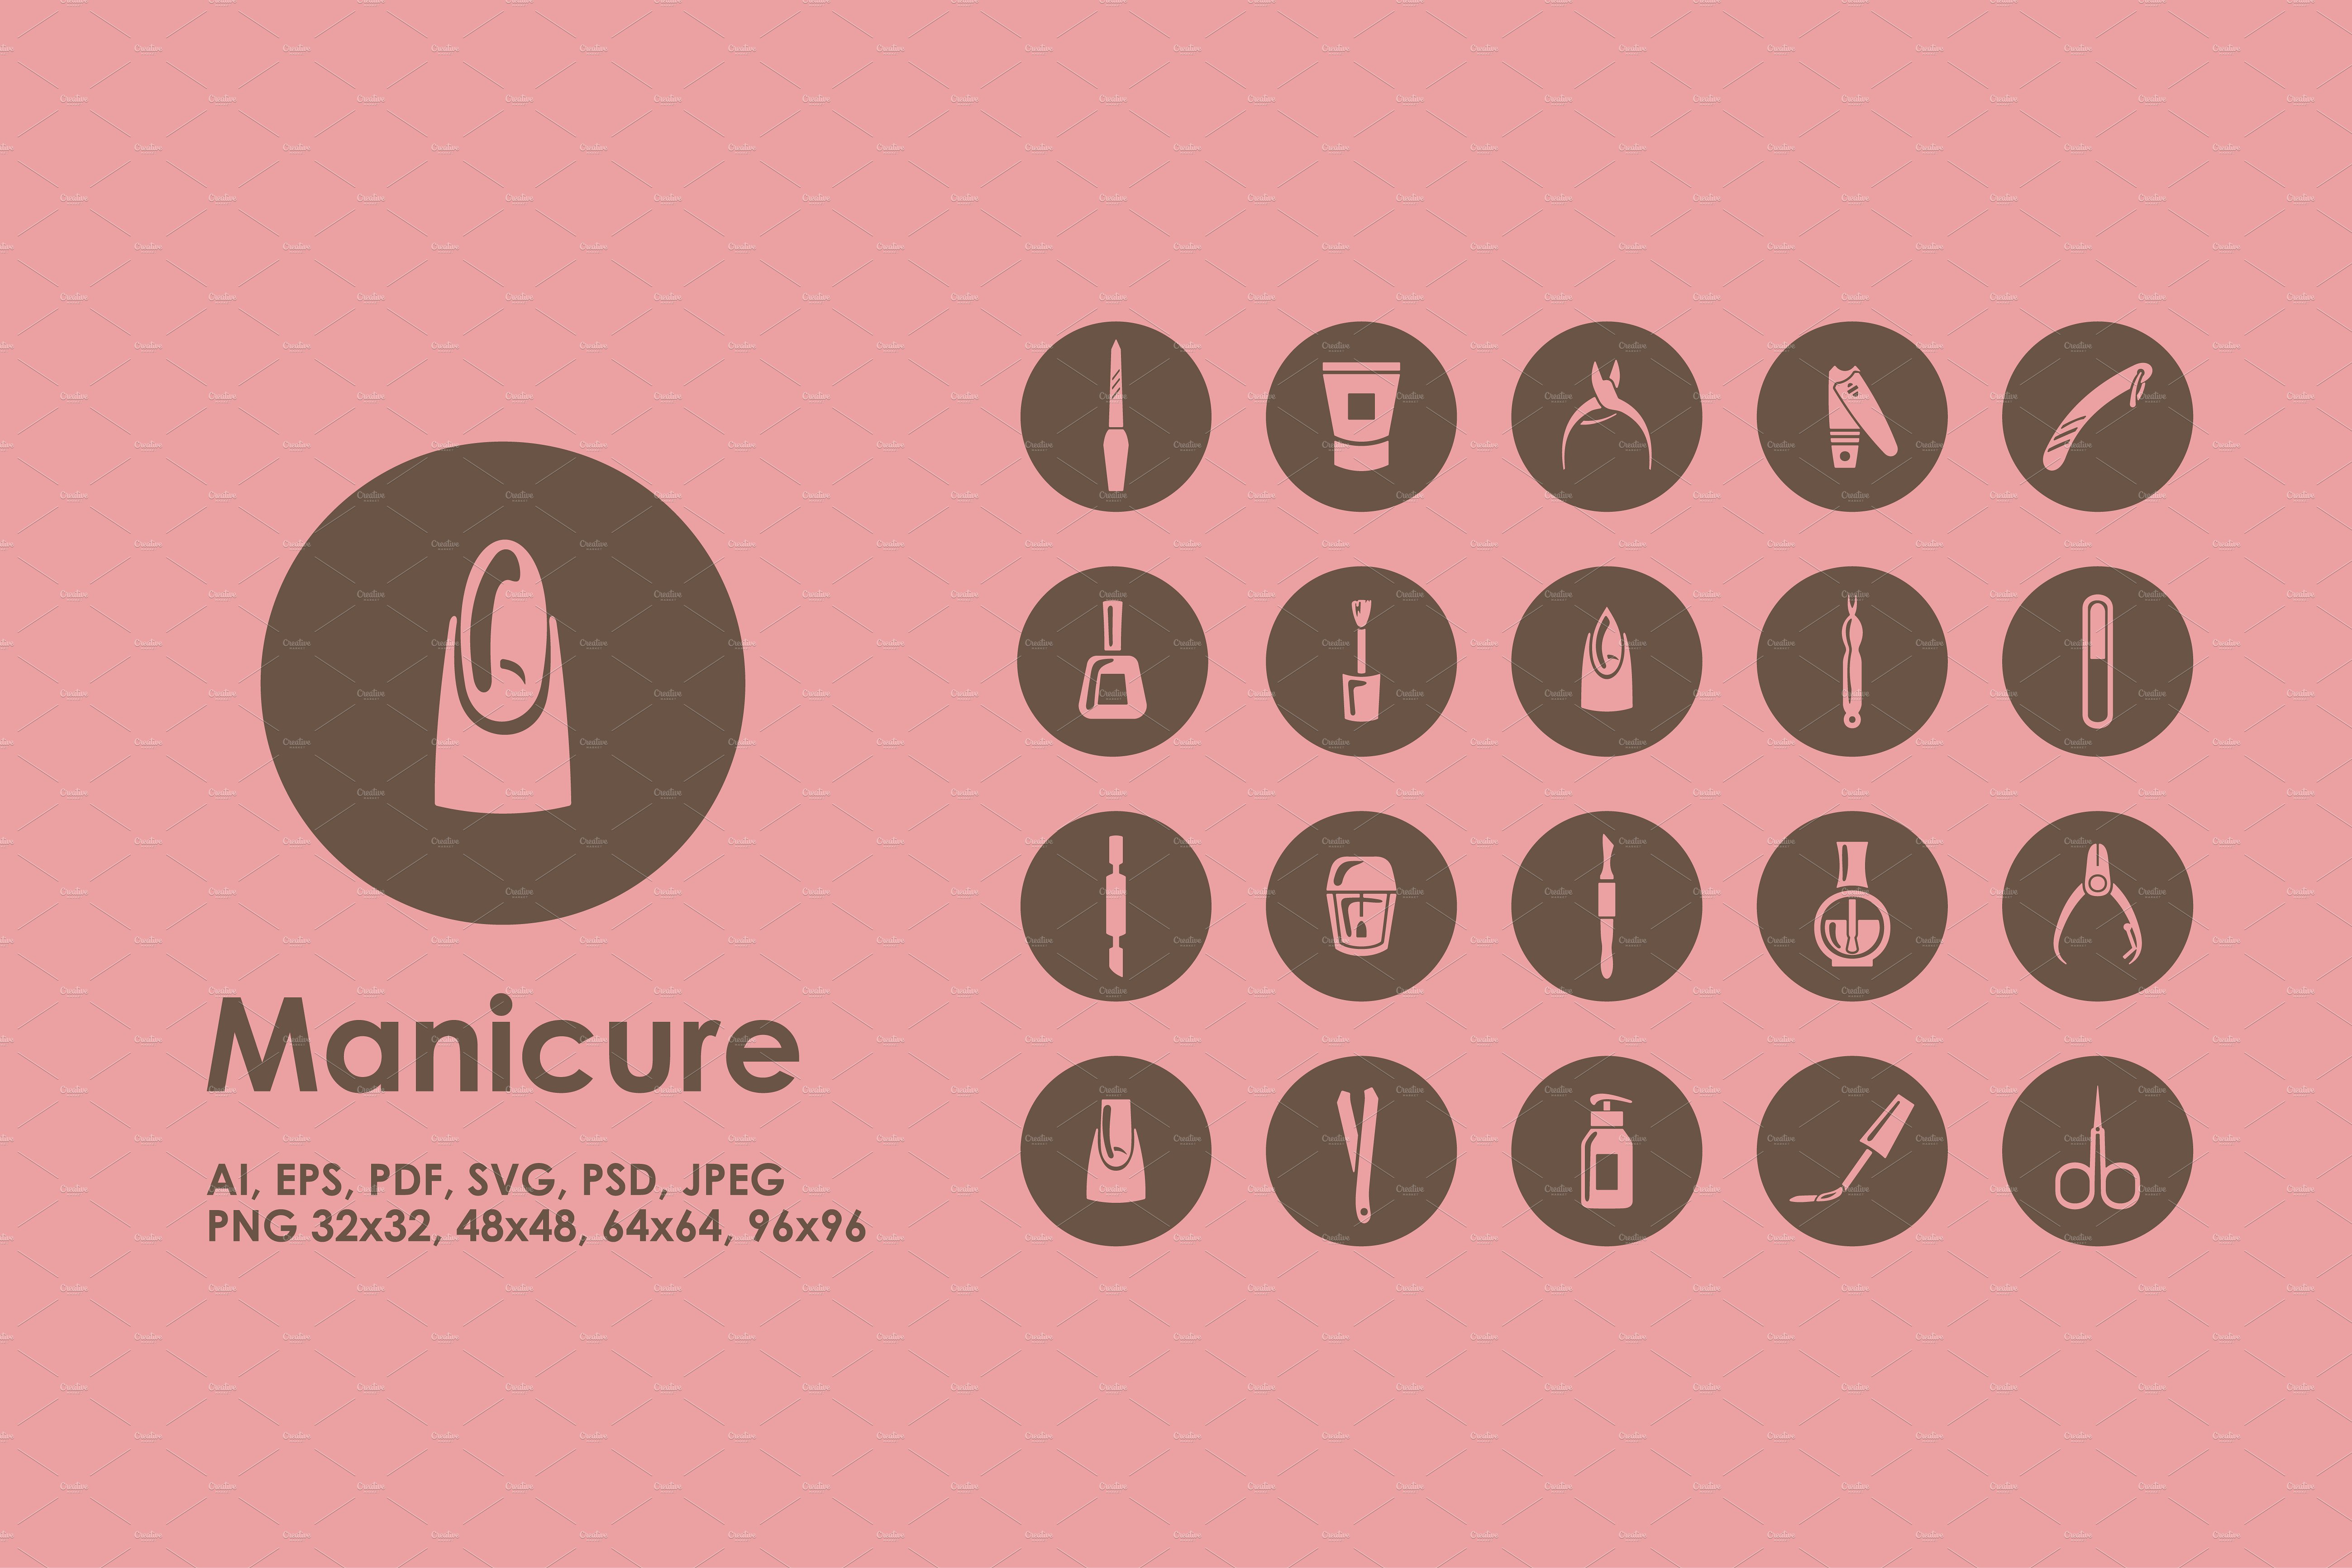 修甲美甲主题图标 Manicure simple icons插图